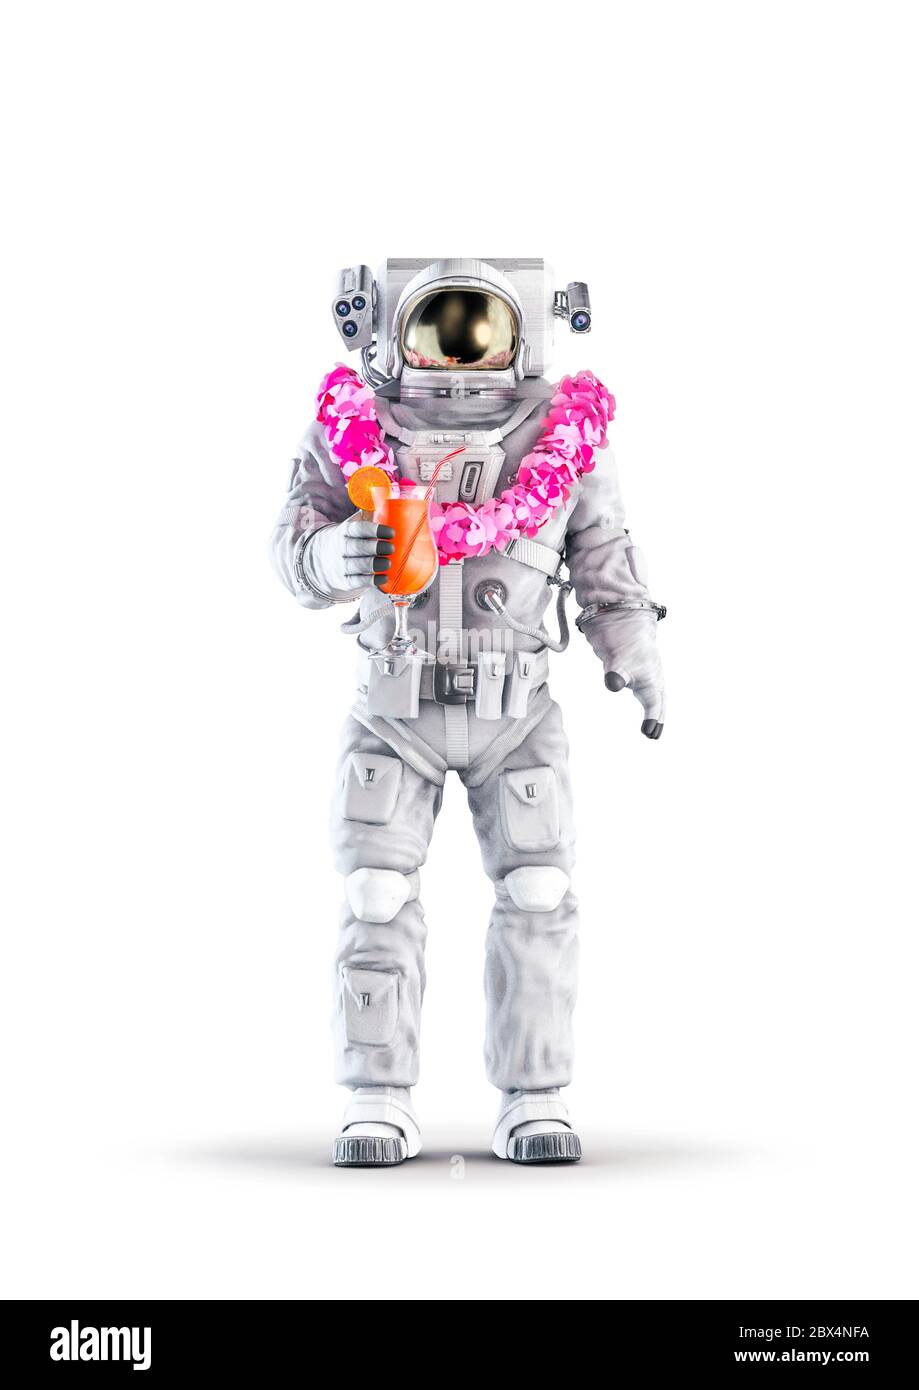 Astronauta tropical de vacaciones / 3D ilustración de traje espacial con figura masculina de vacaciones con cóctel de frutas y lei de flores hawaianas aisladas en whi Foto de stock